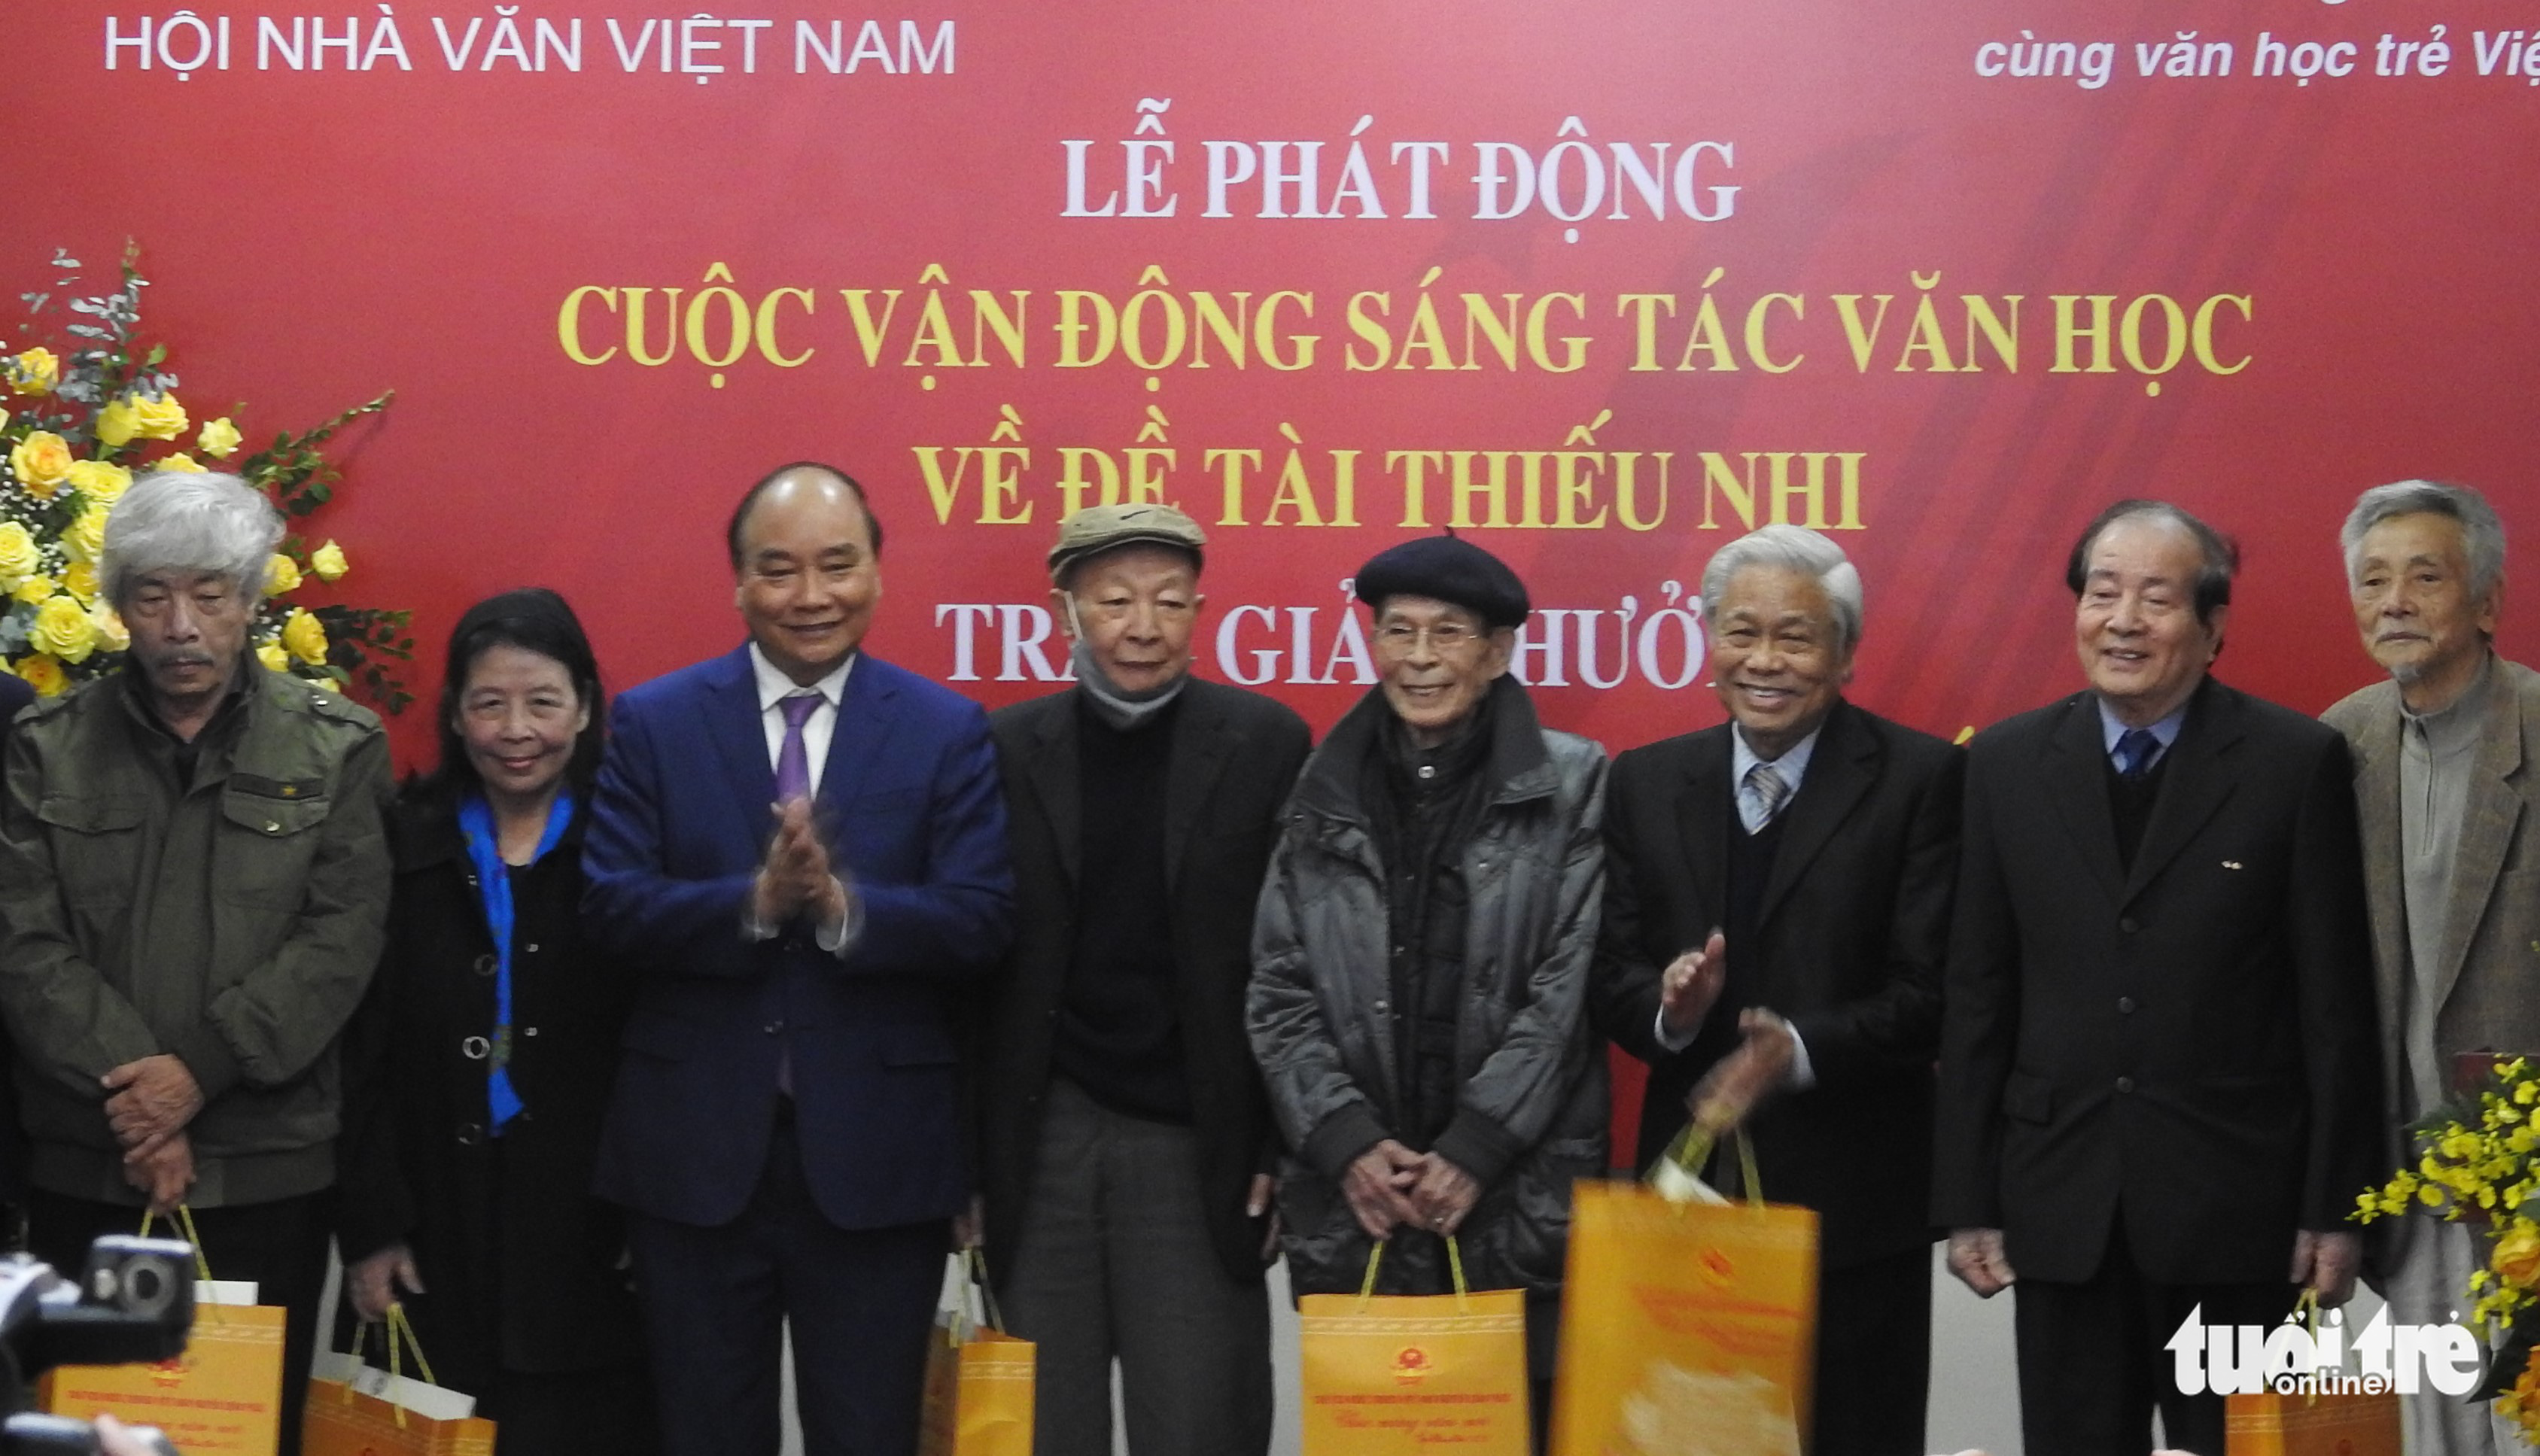 Chủ tịch nước: Mong một ngày không xa Việt Nam có nhà văn đoạt giải Nobel - Ảnh 3.